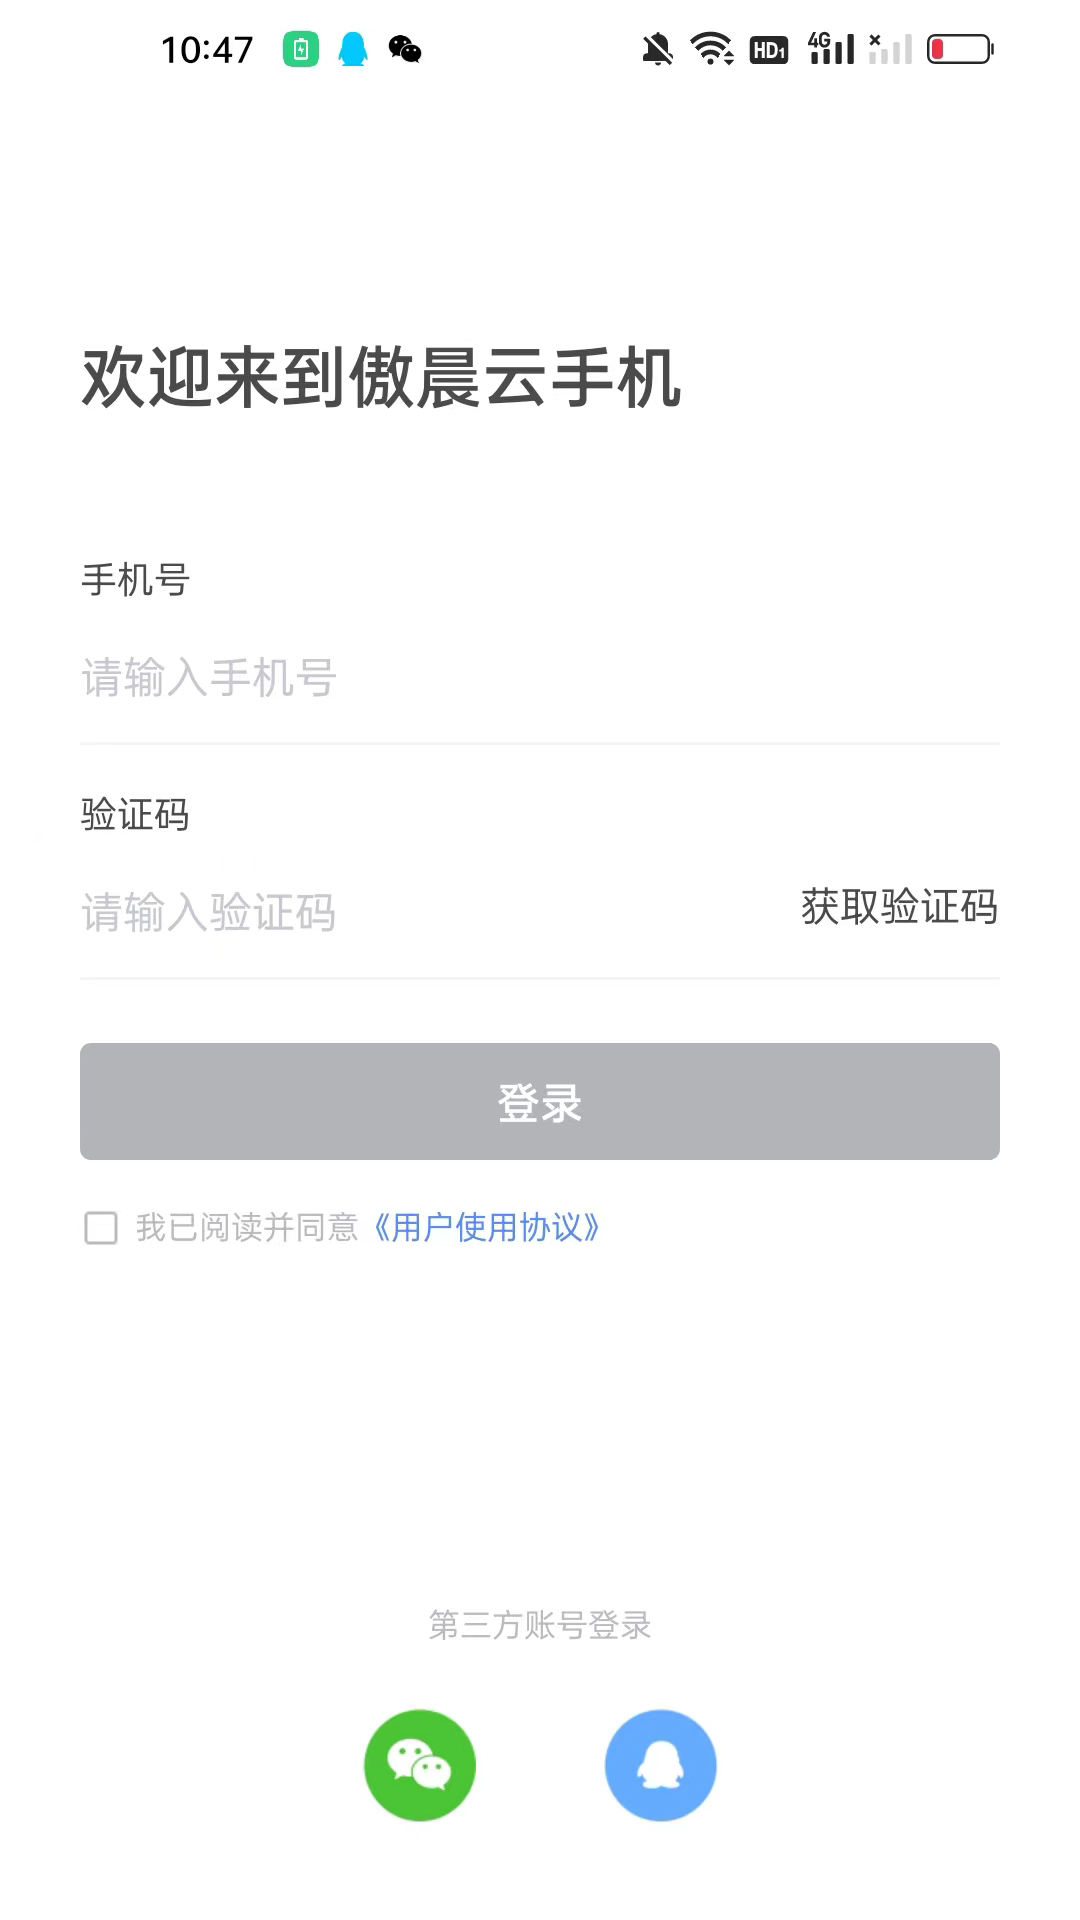 傲晨云手机app官方版图1